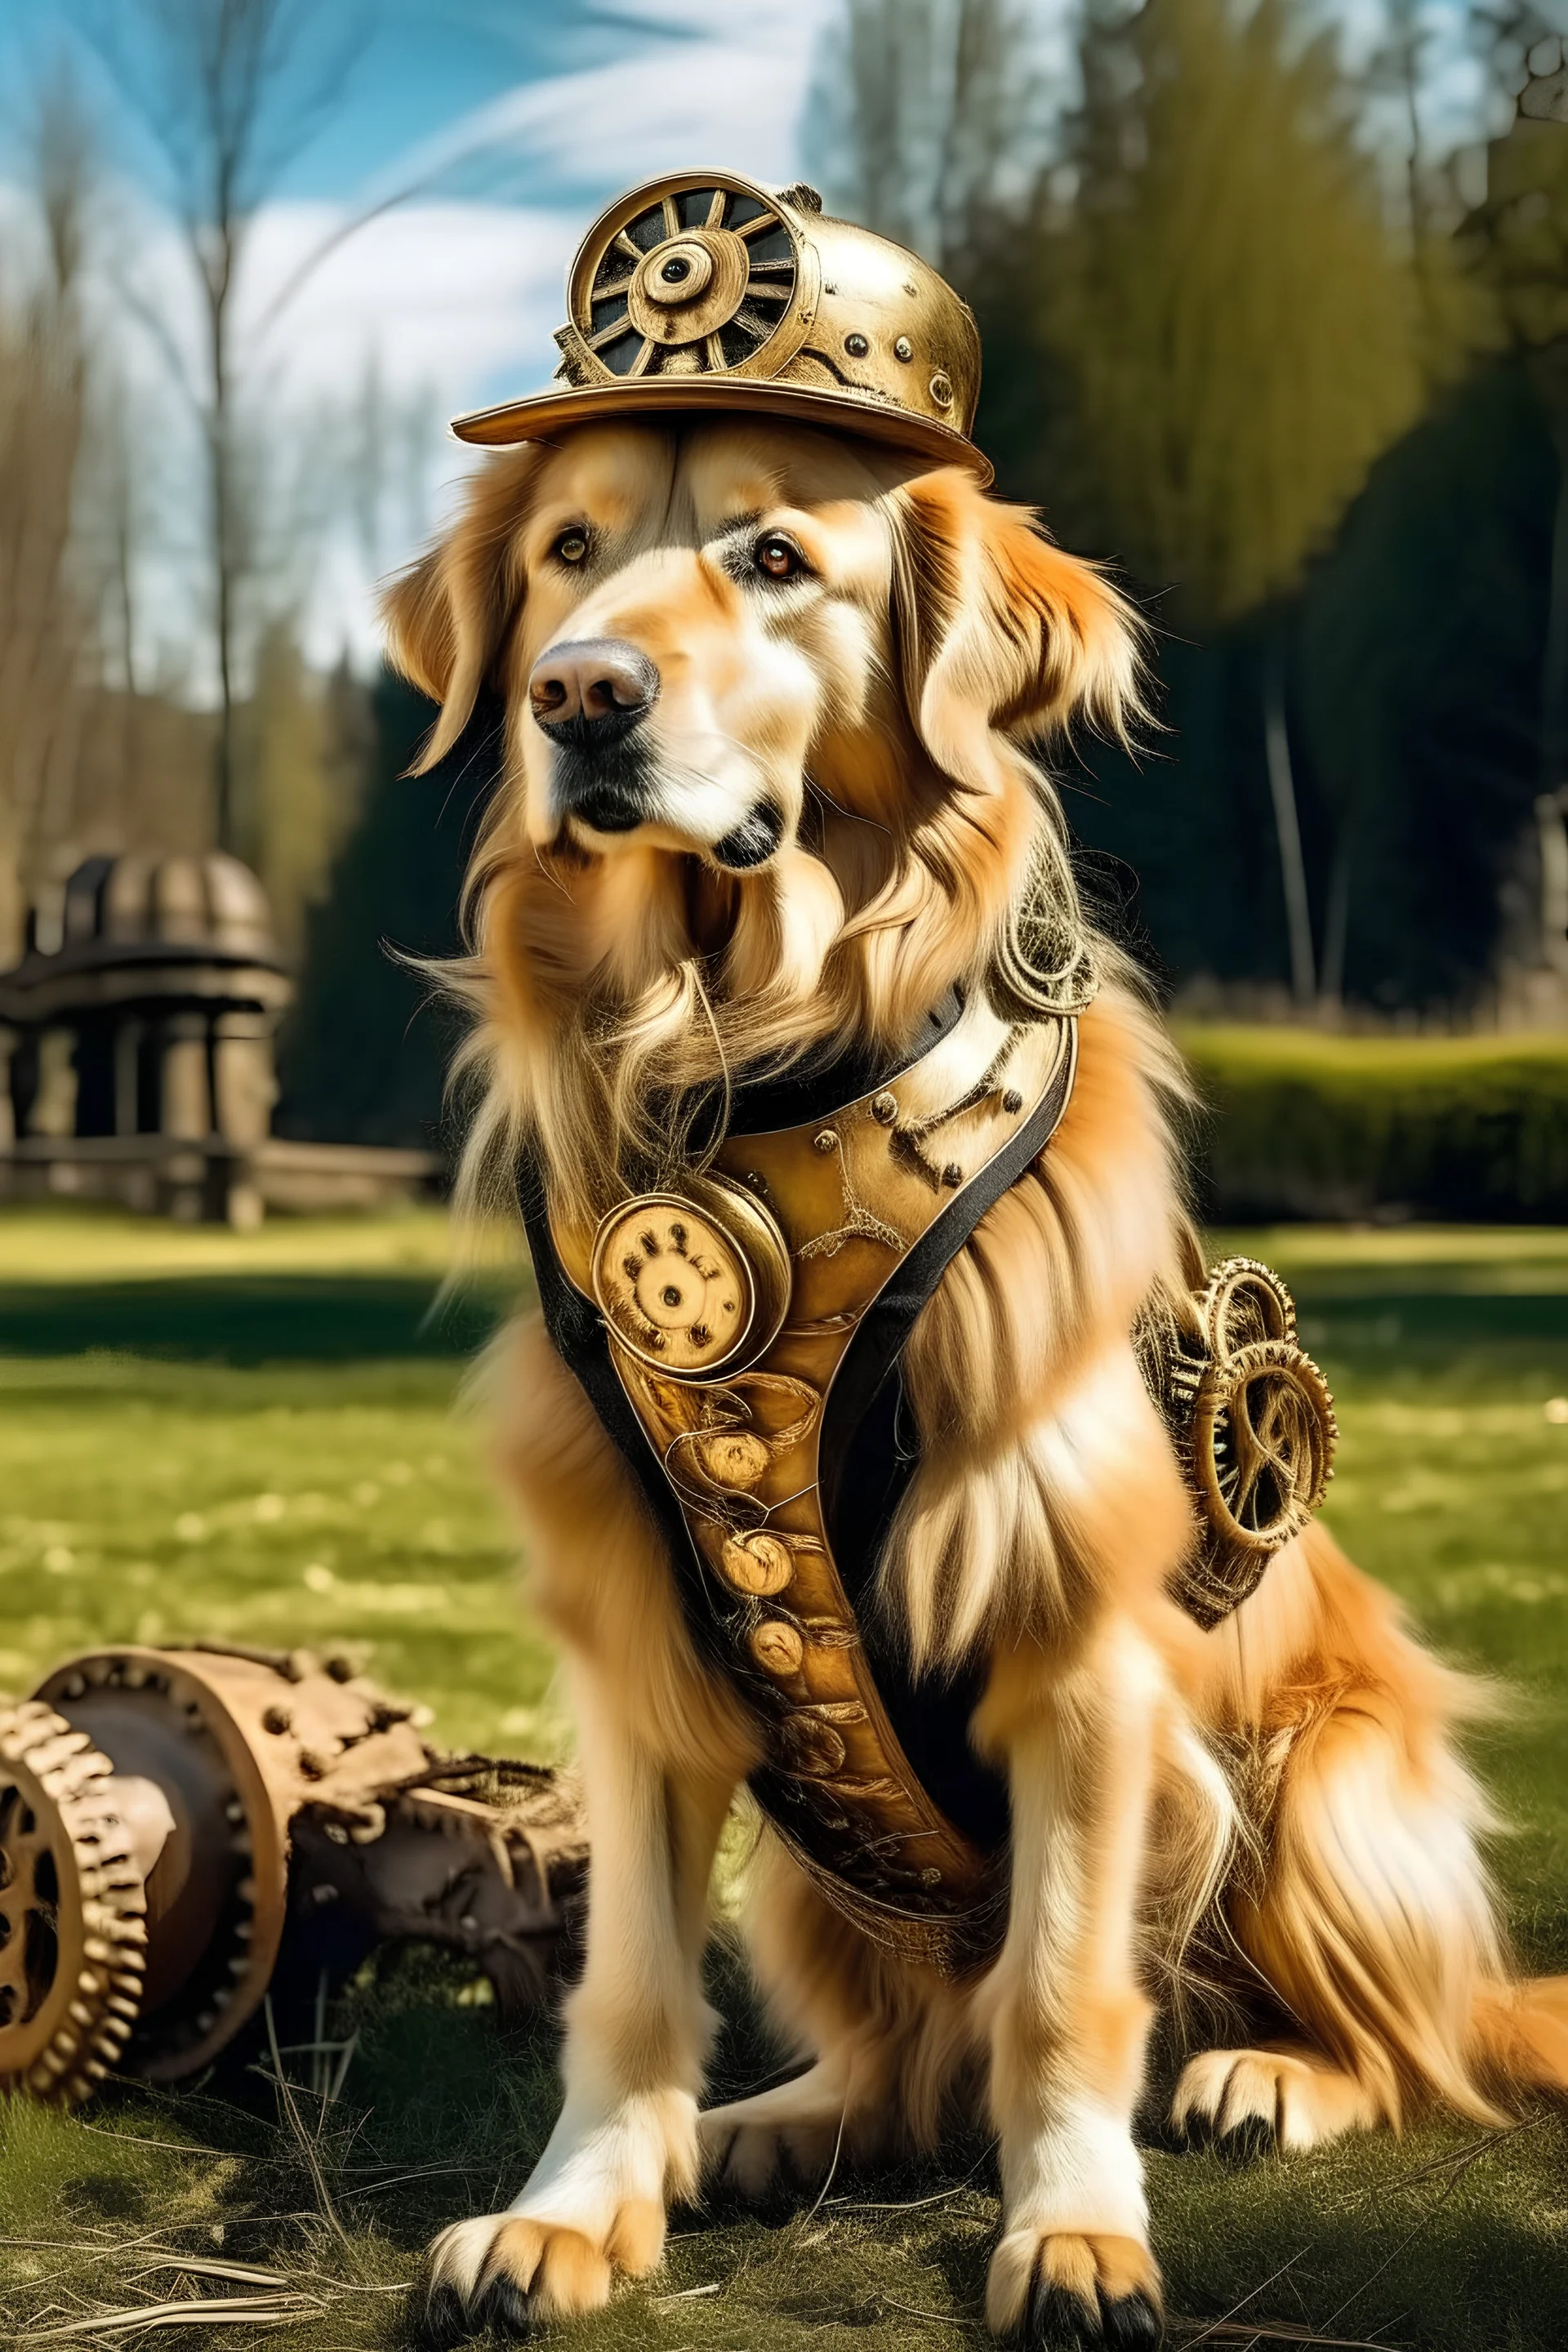 chien steampunk dans un parc jeune golden retriver